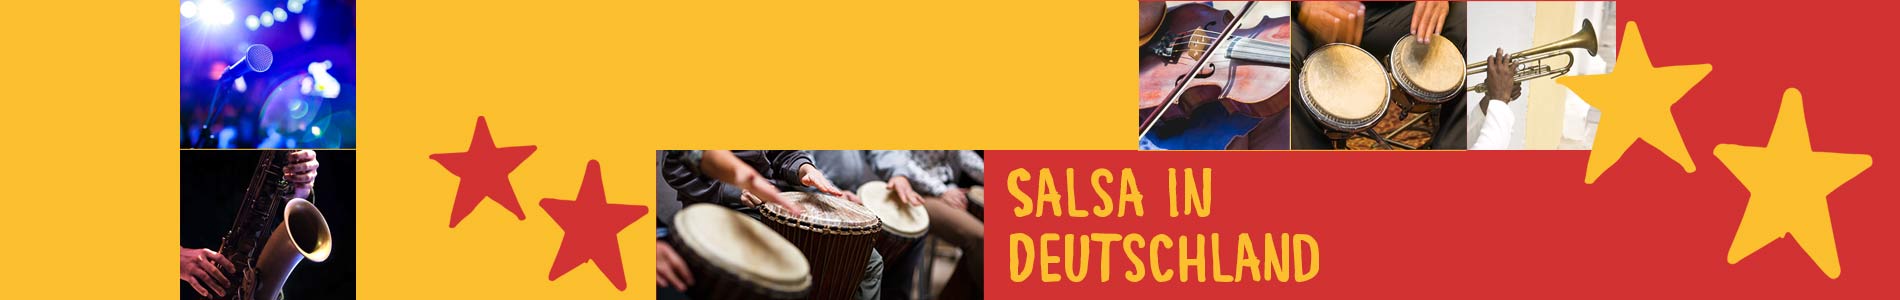 Salsa in Cadenberge – Salsa lernen und tanzen, Tanzkurse, Partys, Veranstaltungen